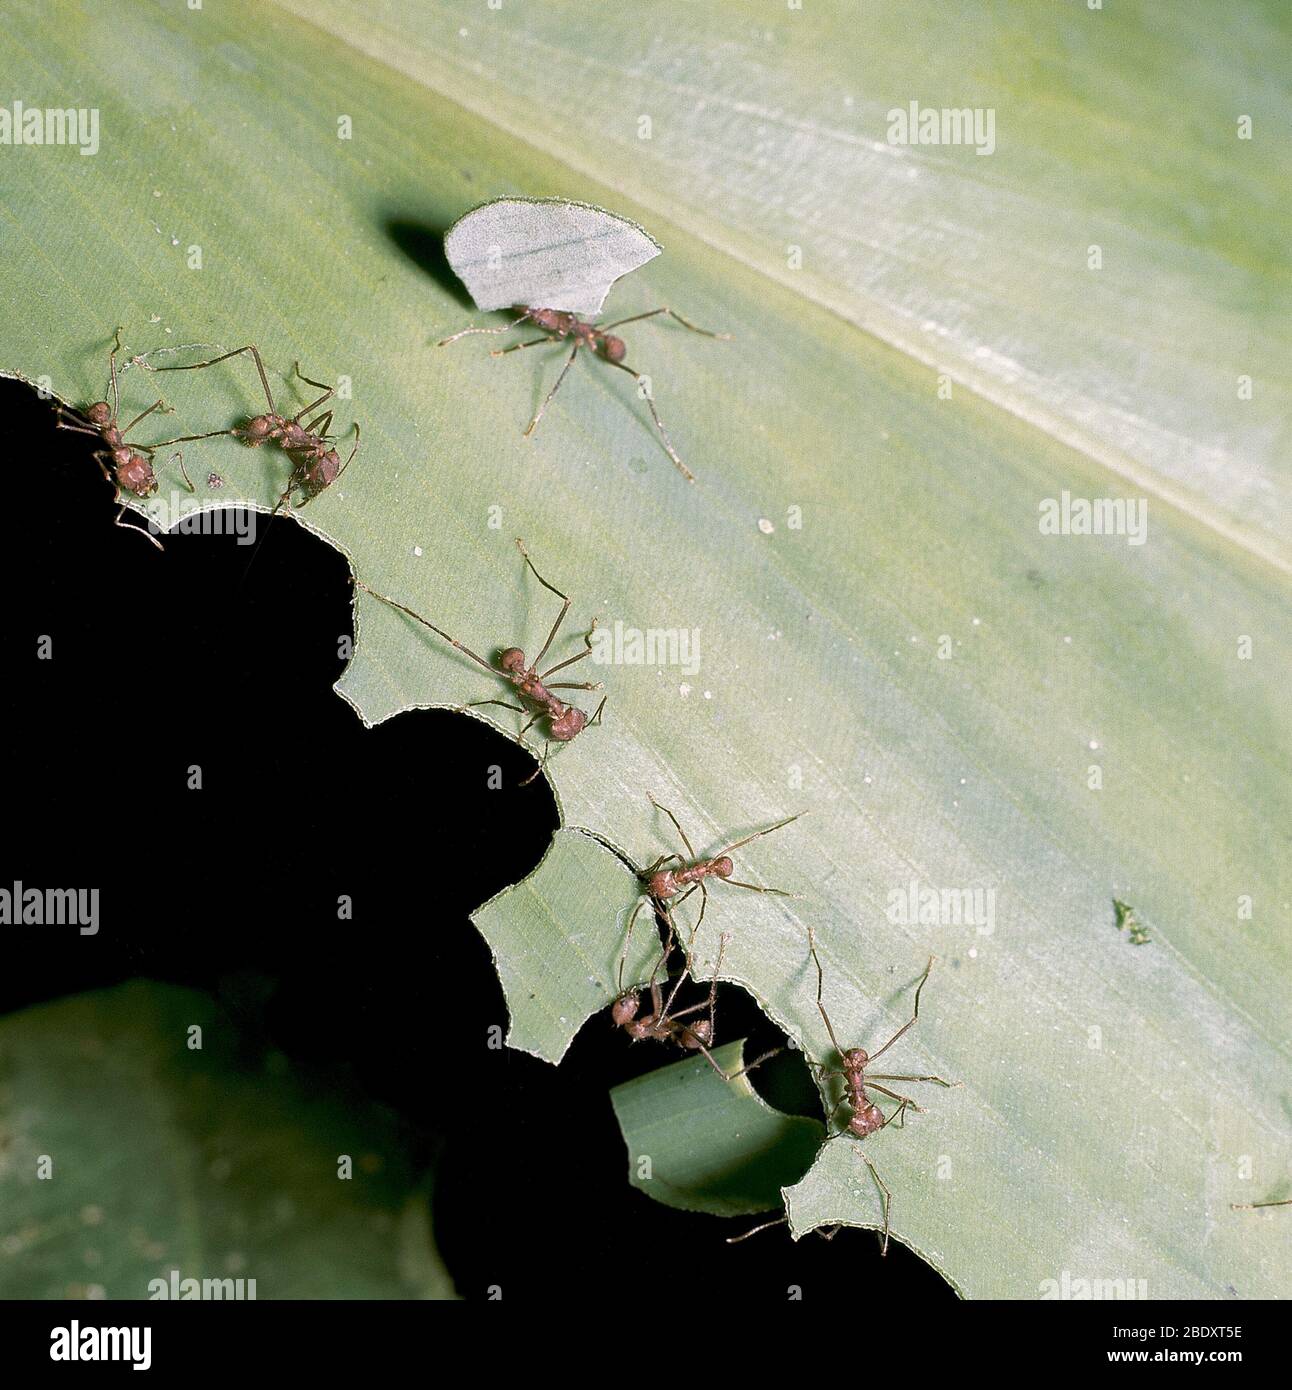 Hormigas cortadoras de hojas Foto de stock